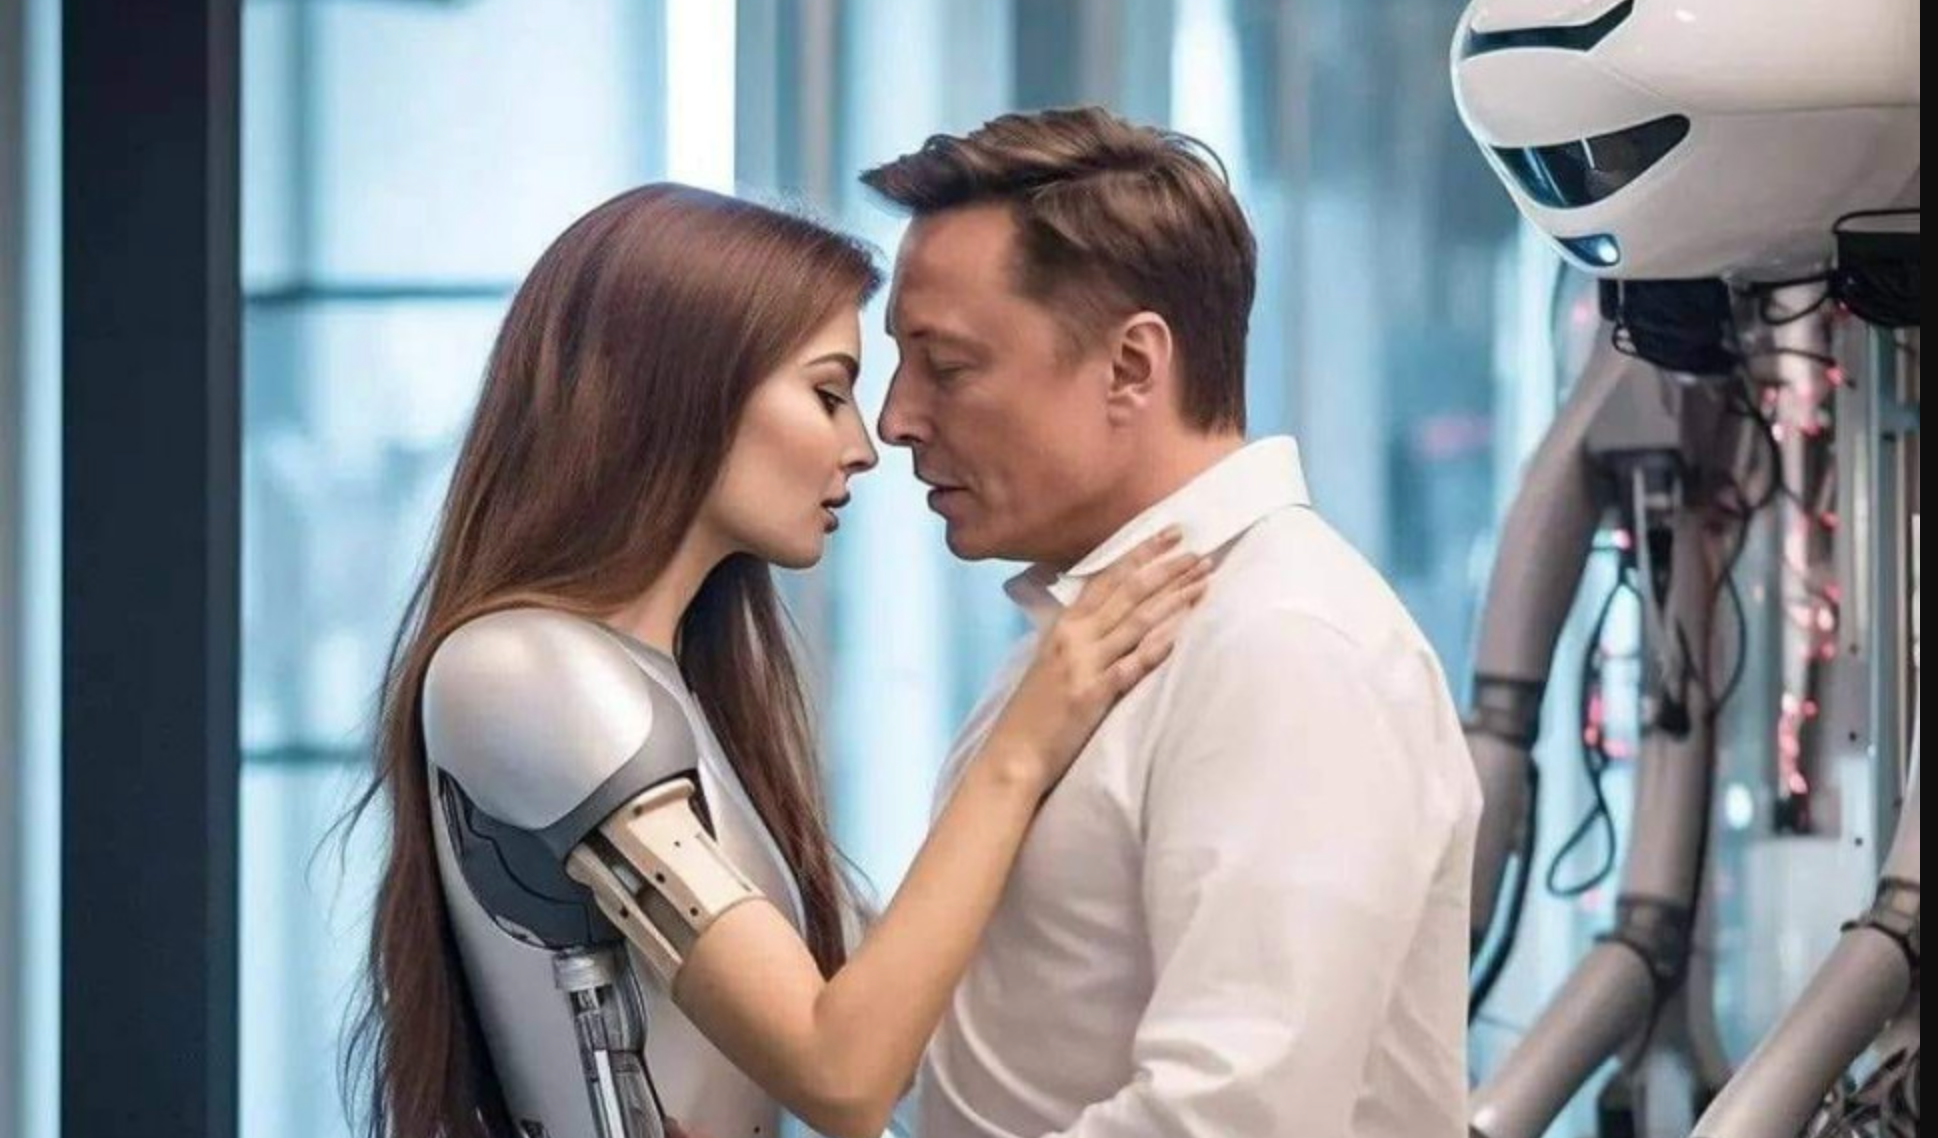 Сеть заполонили слухи о роботе-жене Маска и фейковом порно. Что происходит - Фото